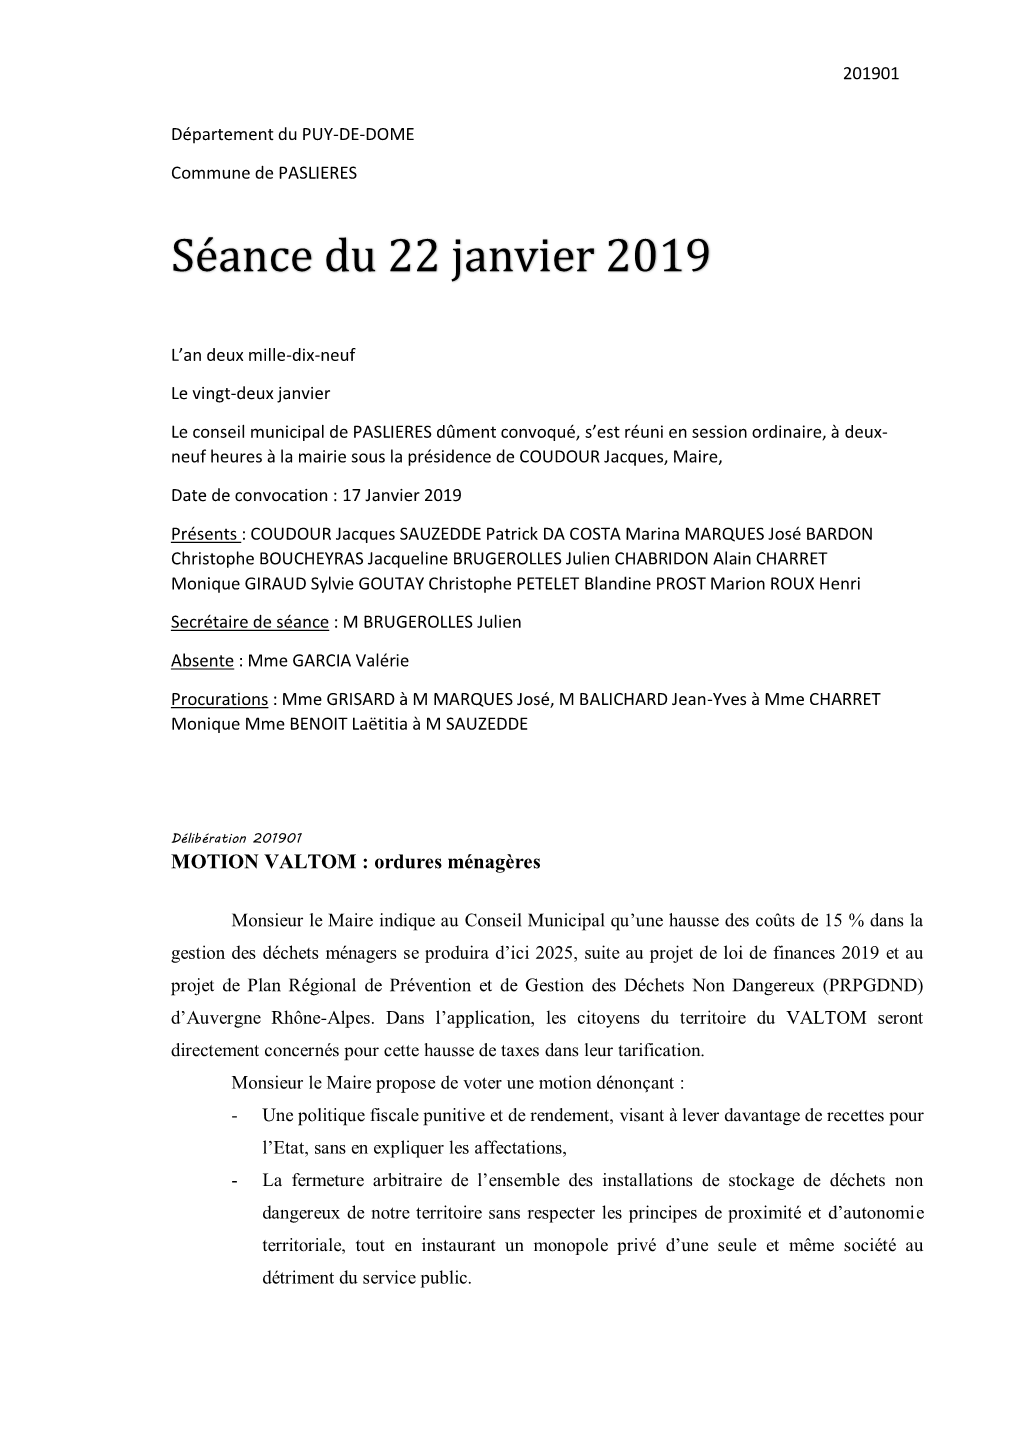 Séance Du 22 Janvier 2019